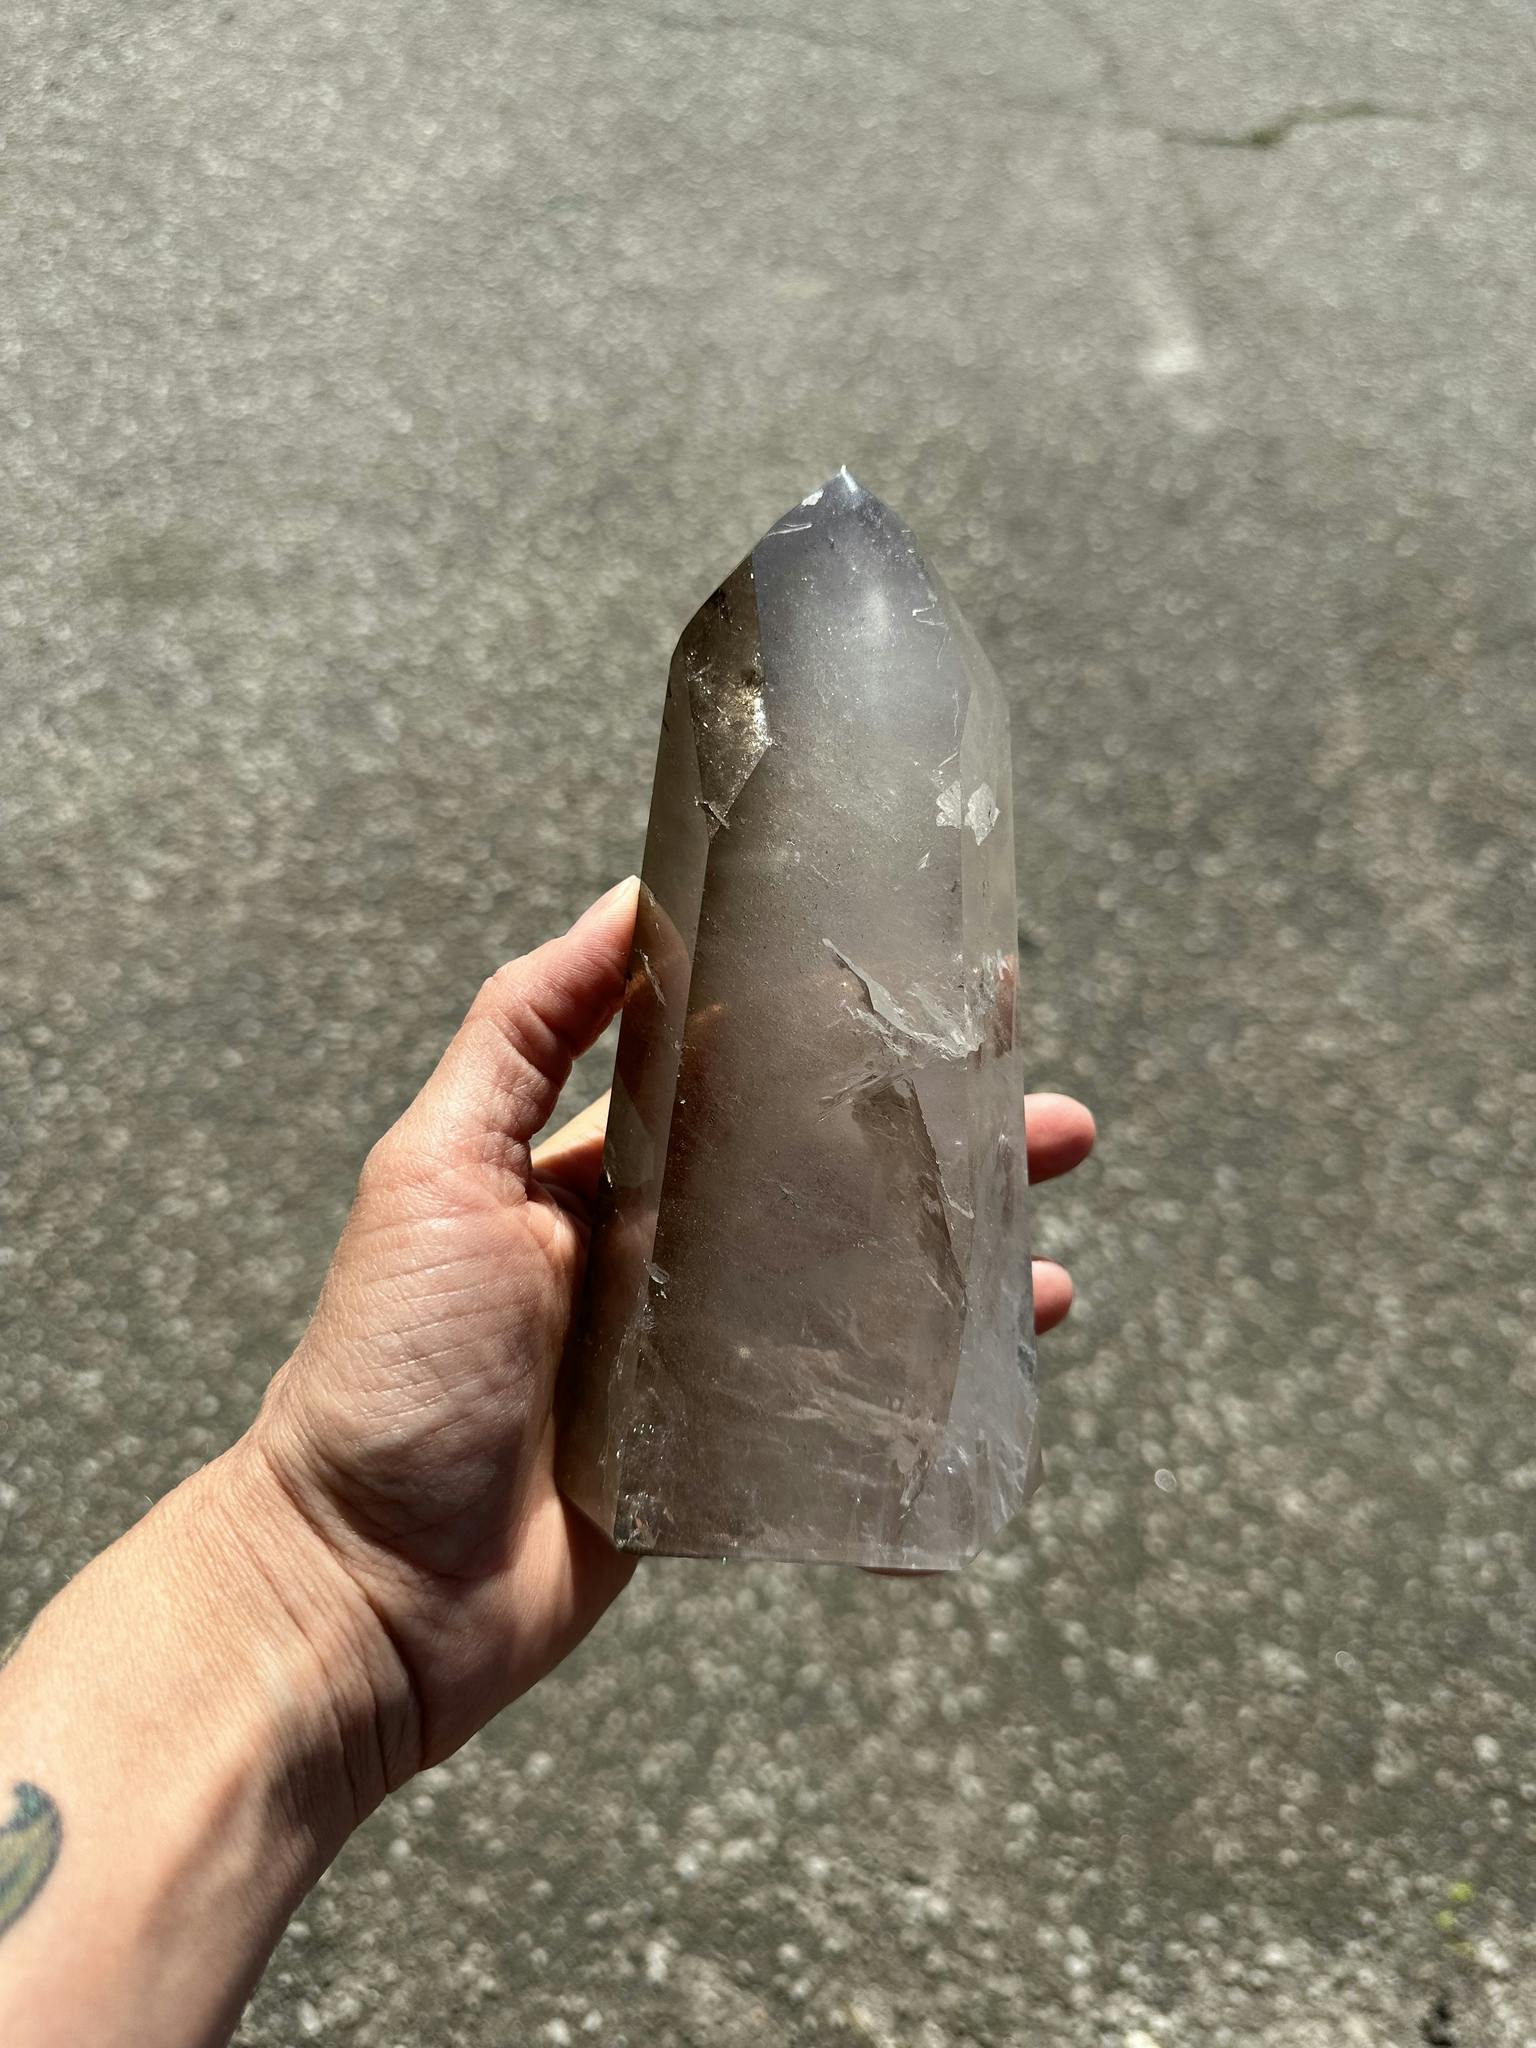 Stor bergkristall spets med lite rökig del